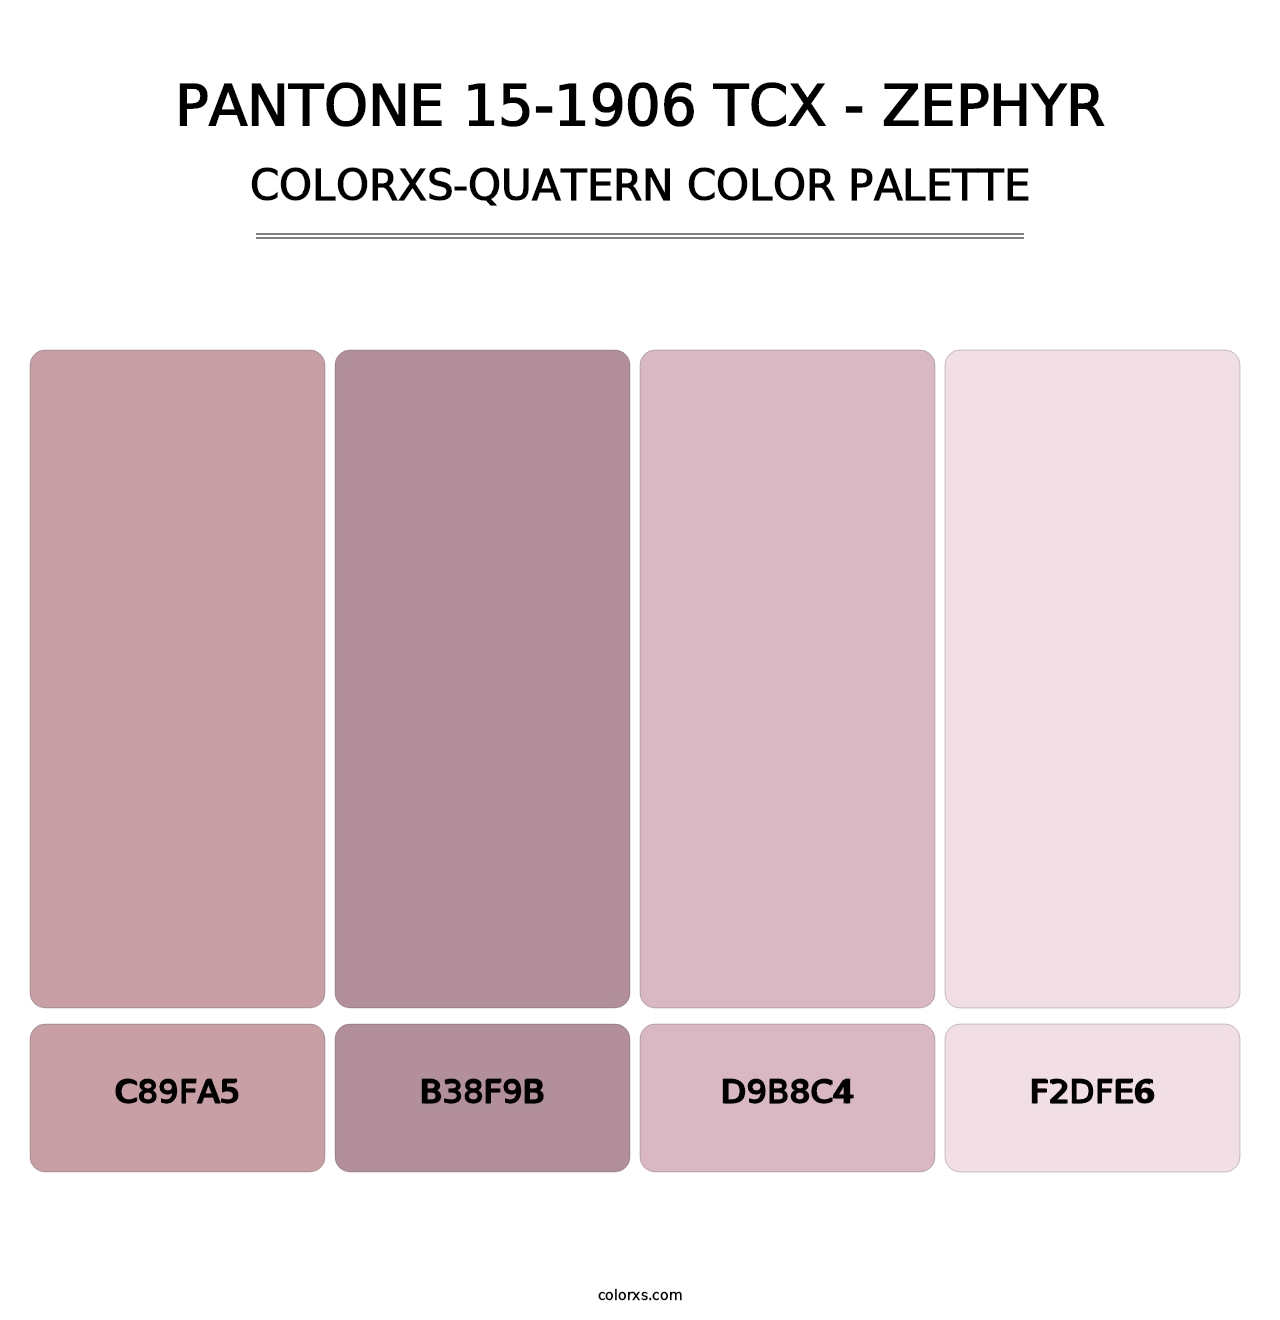 PANTONE 15-1906 TCX - Zephyr - Colorxs Quatern Palette